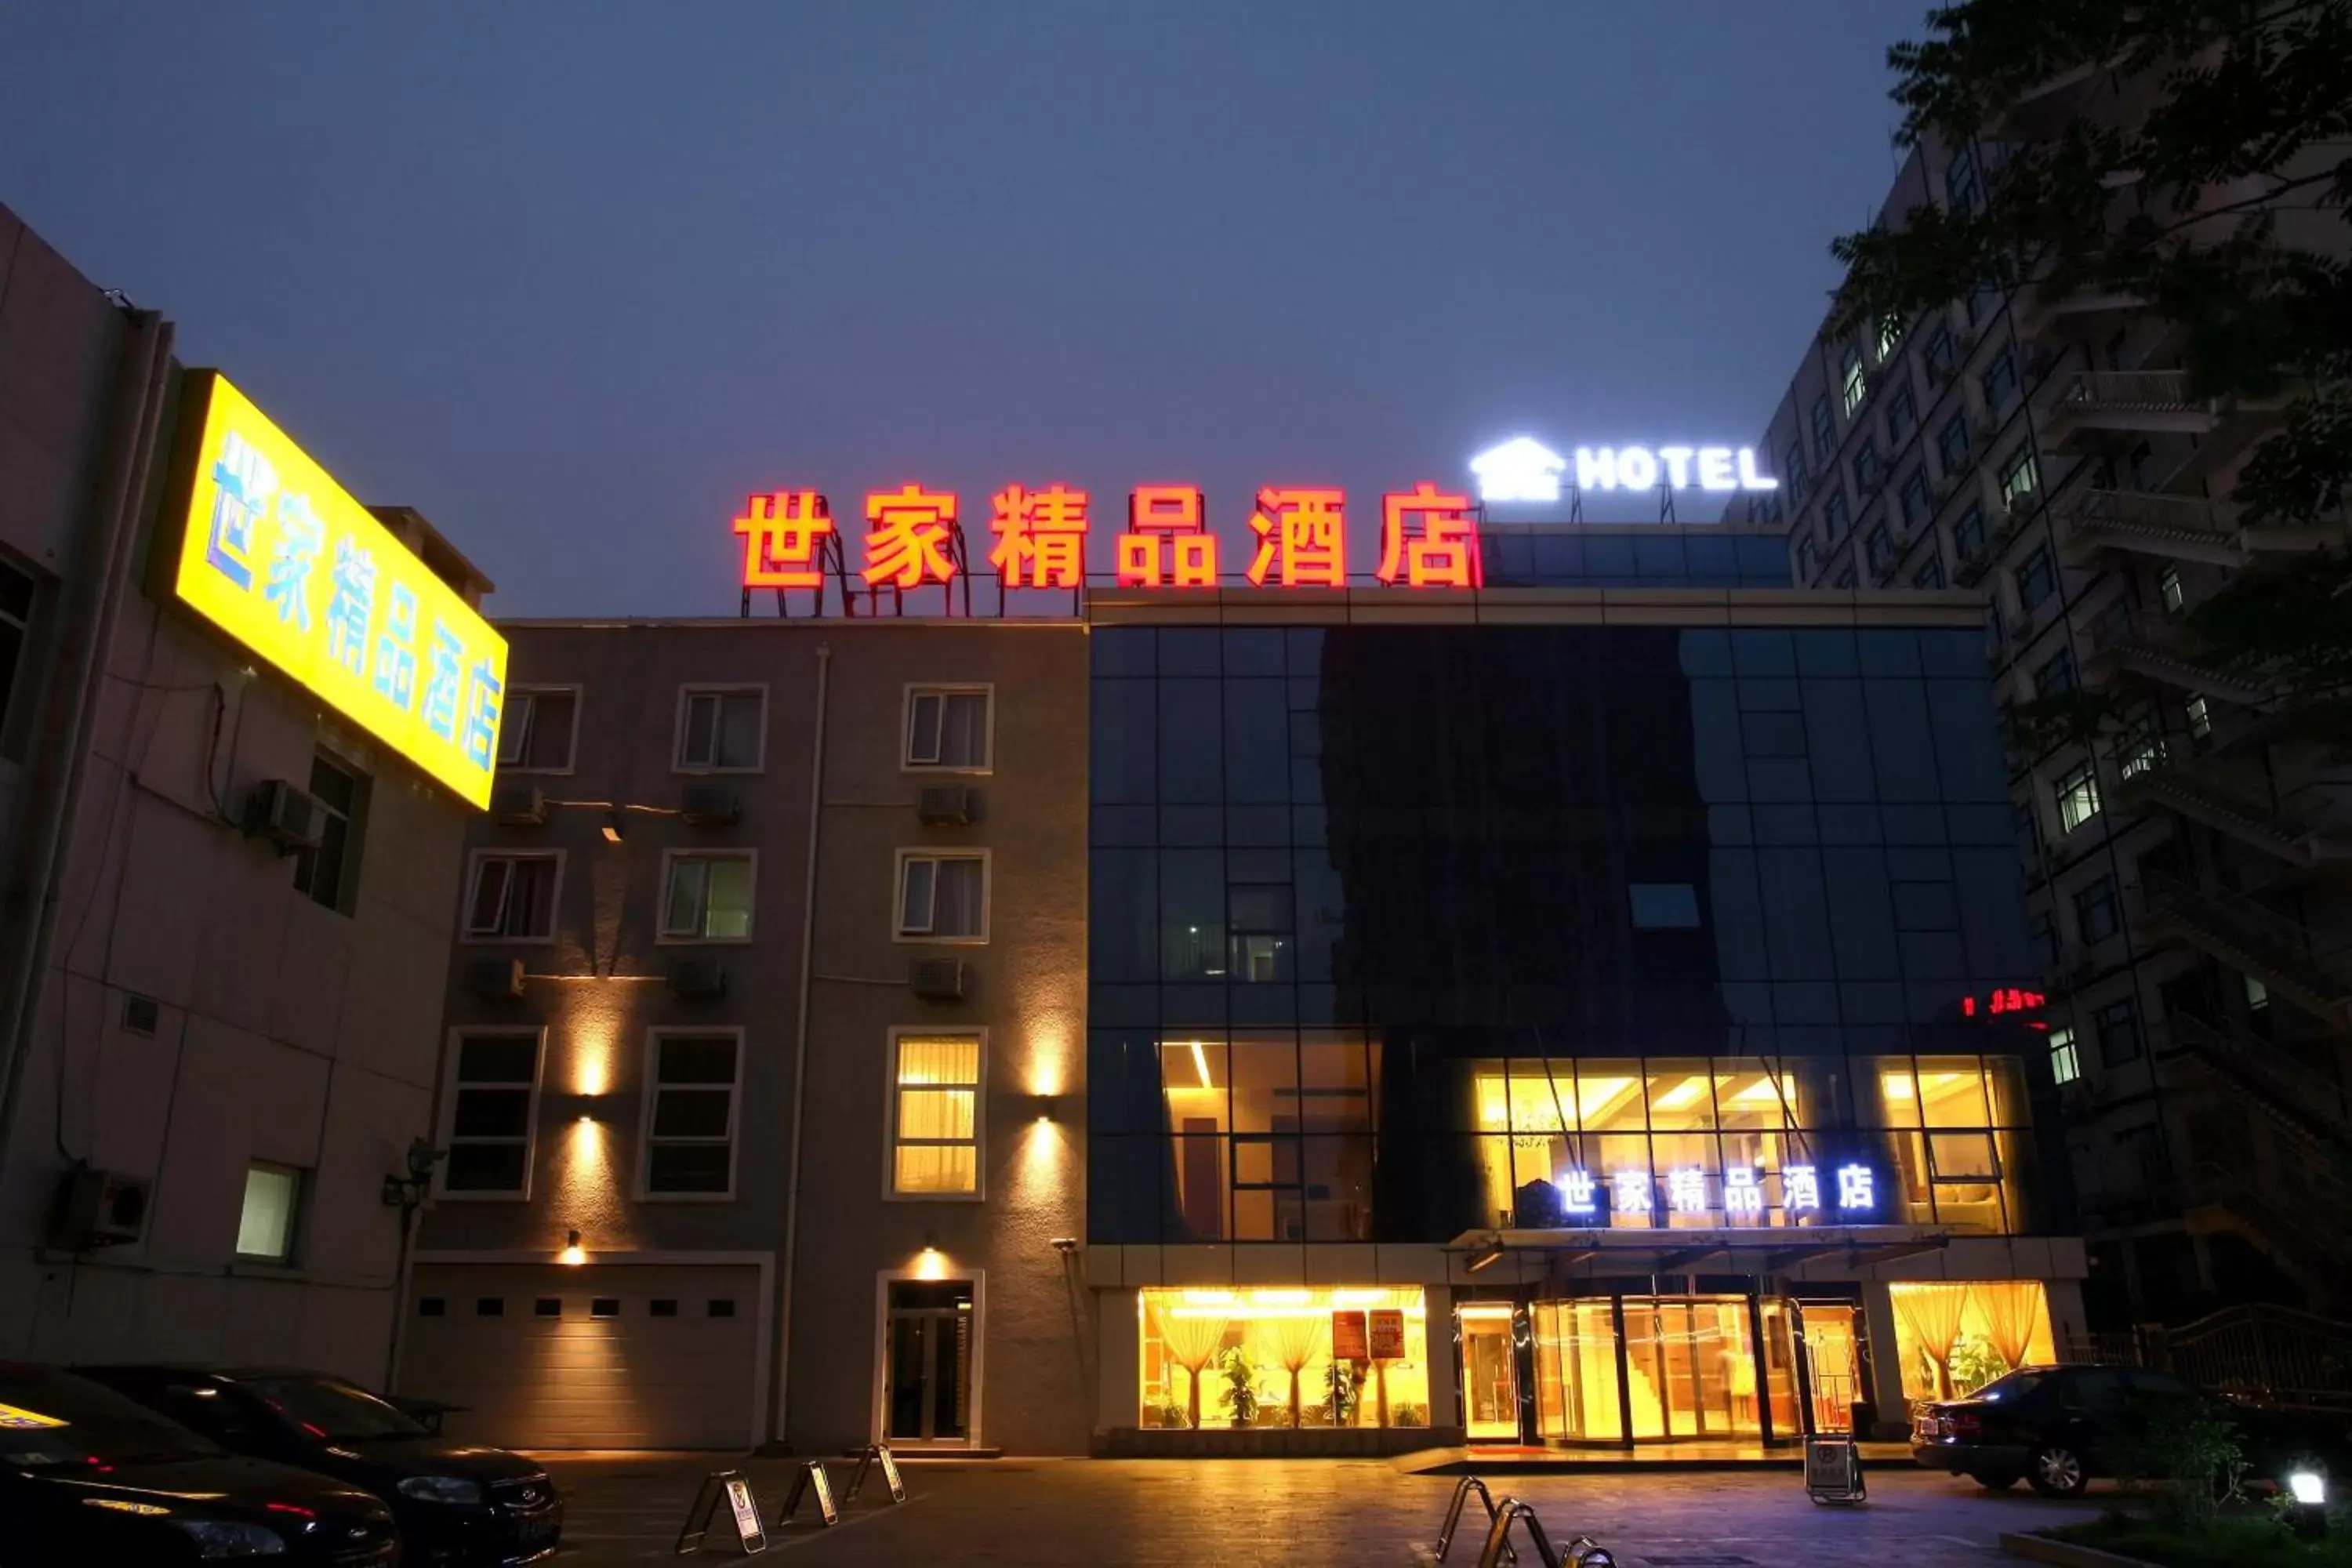 Property Building in Beijing Saga Hotel